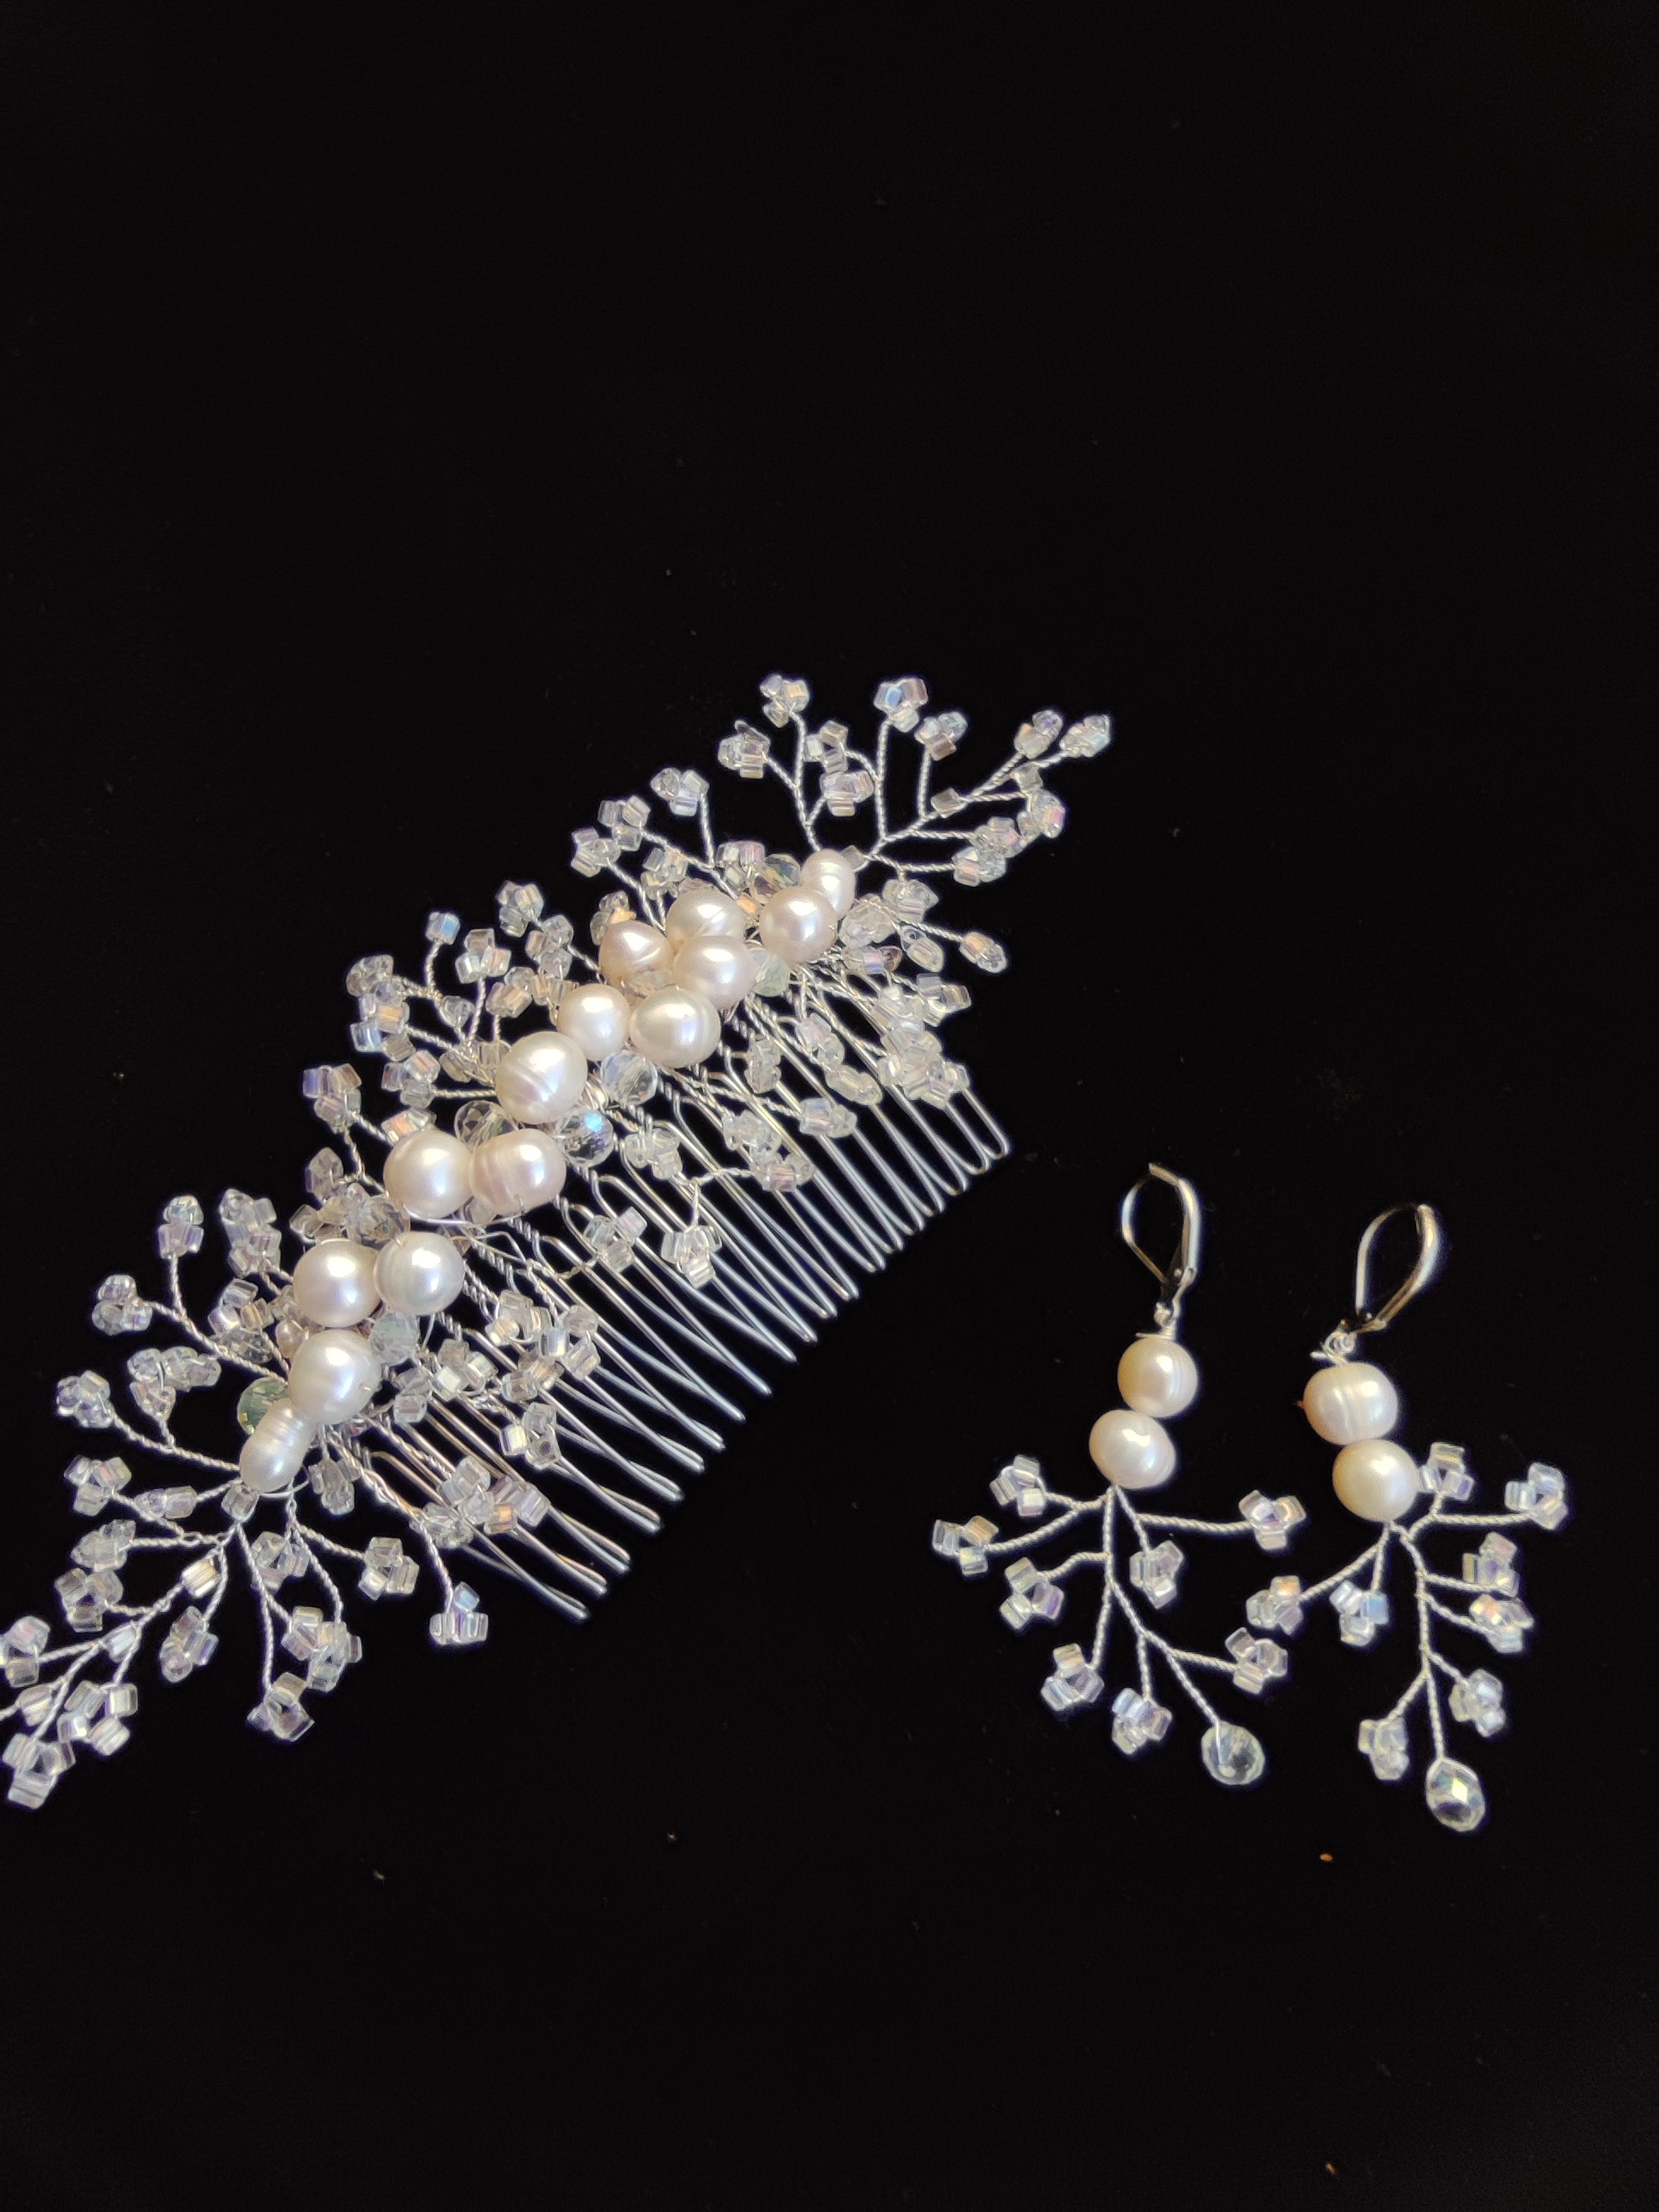 Pente de cabelo para noivas - Tiara com pérolas naturais, cristais e miçangas - Conto de fadas com miçangas